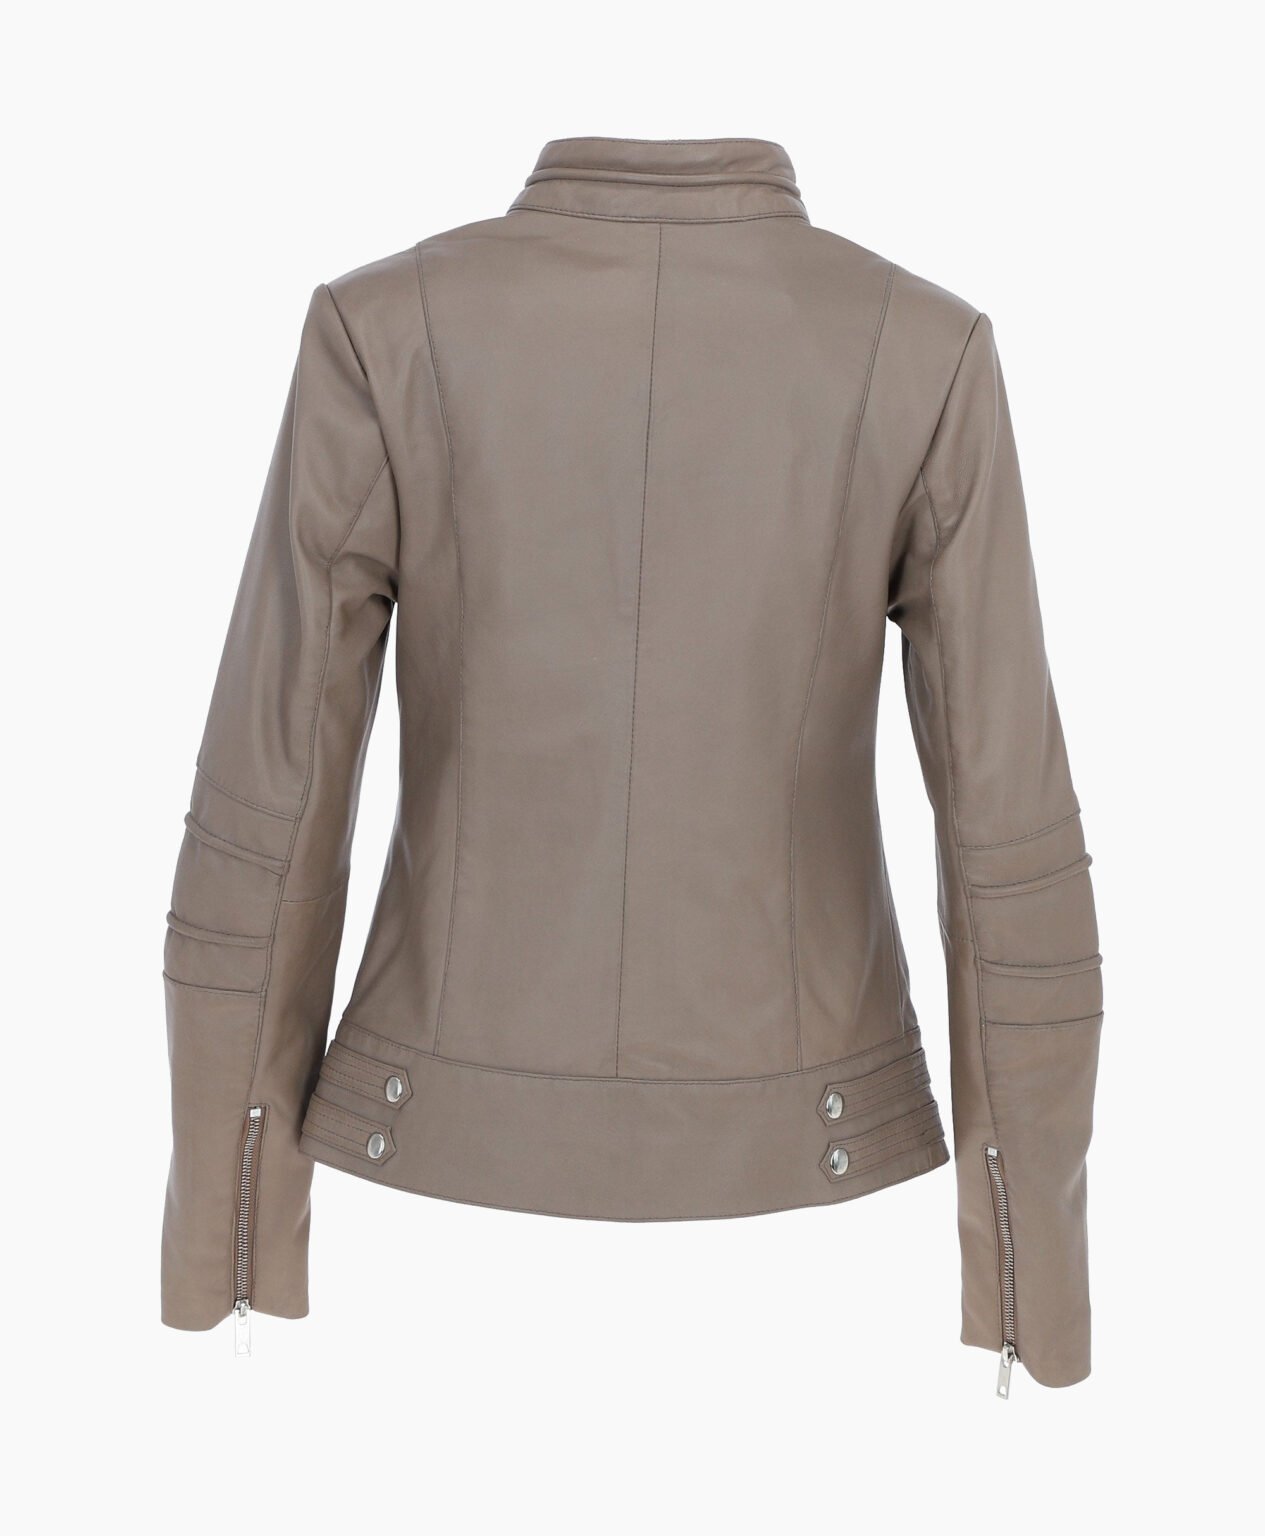 vogue-jacket-leather-biker-jacket-gray-lahaina-image202